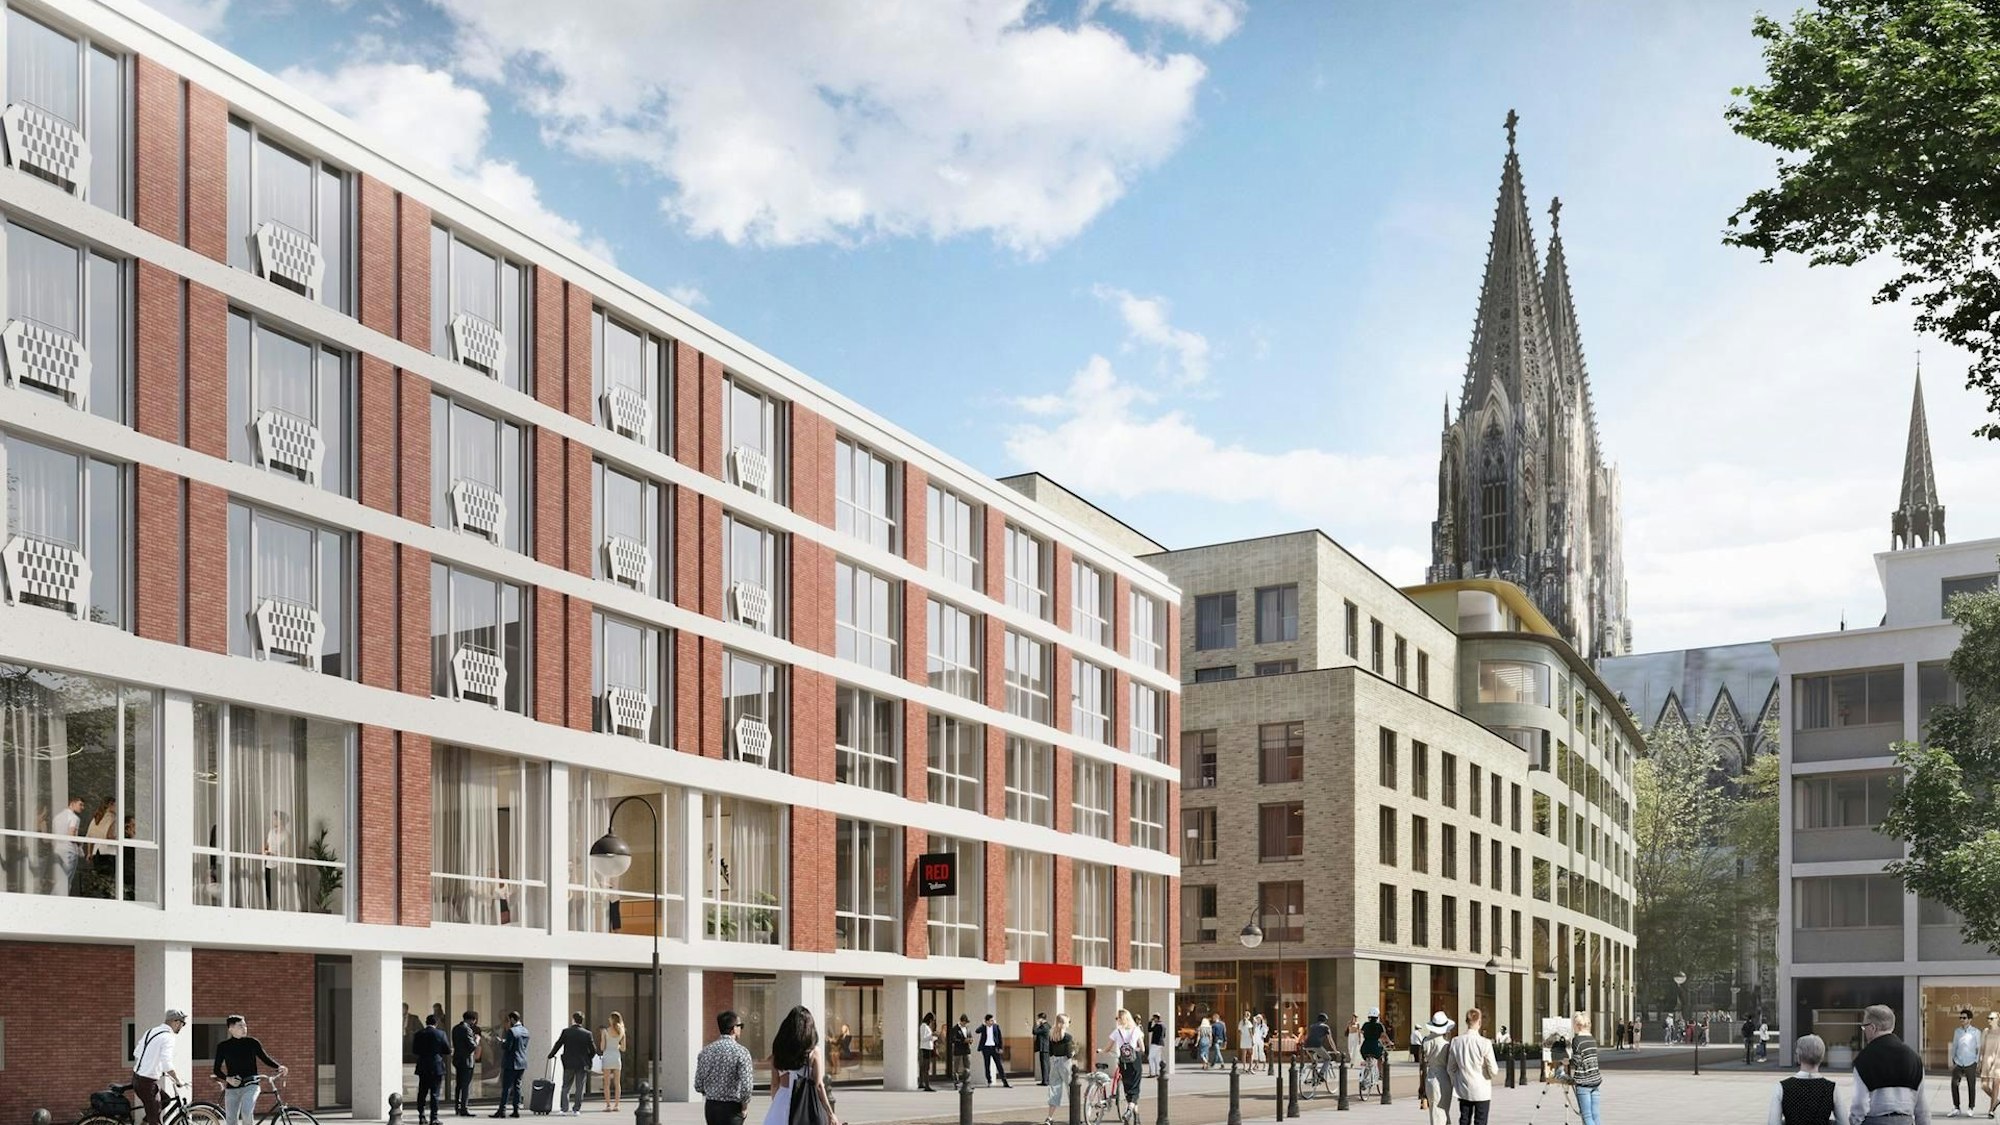 Die Visualisierung zeigt den Blick auf das Neubauprojekt Laurenz-Carré, im Hintergrund ist der Kölner Dom zu sehen.